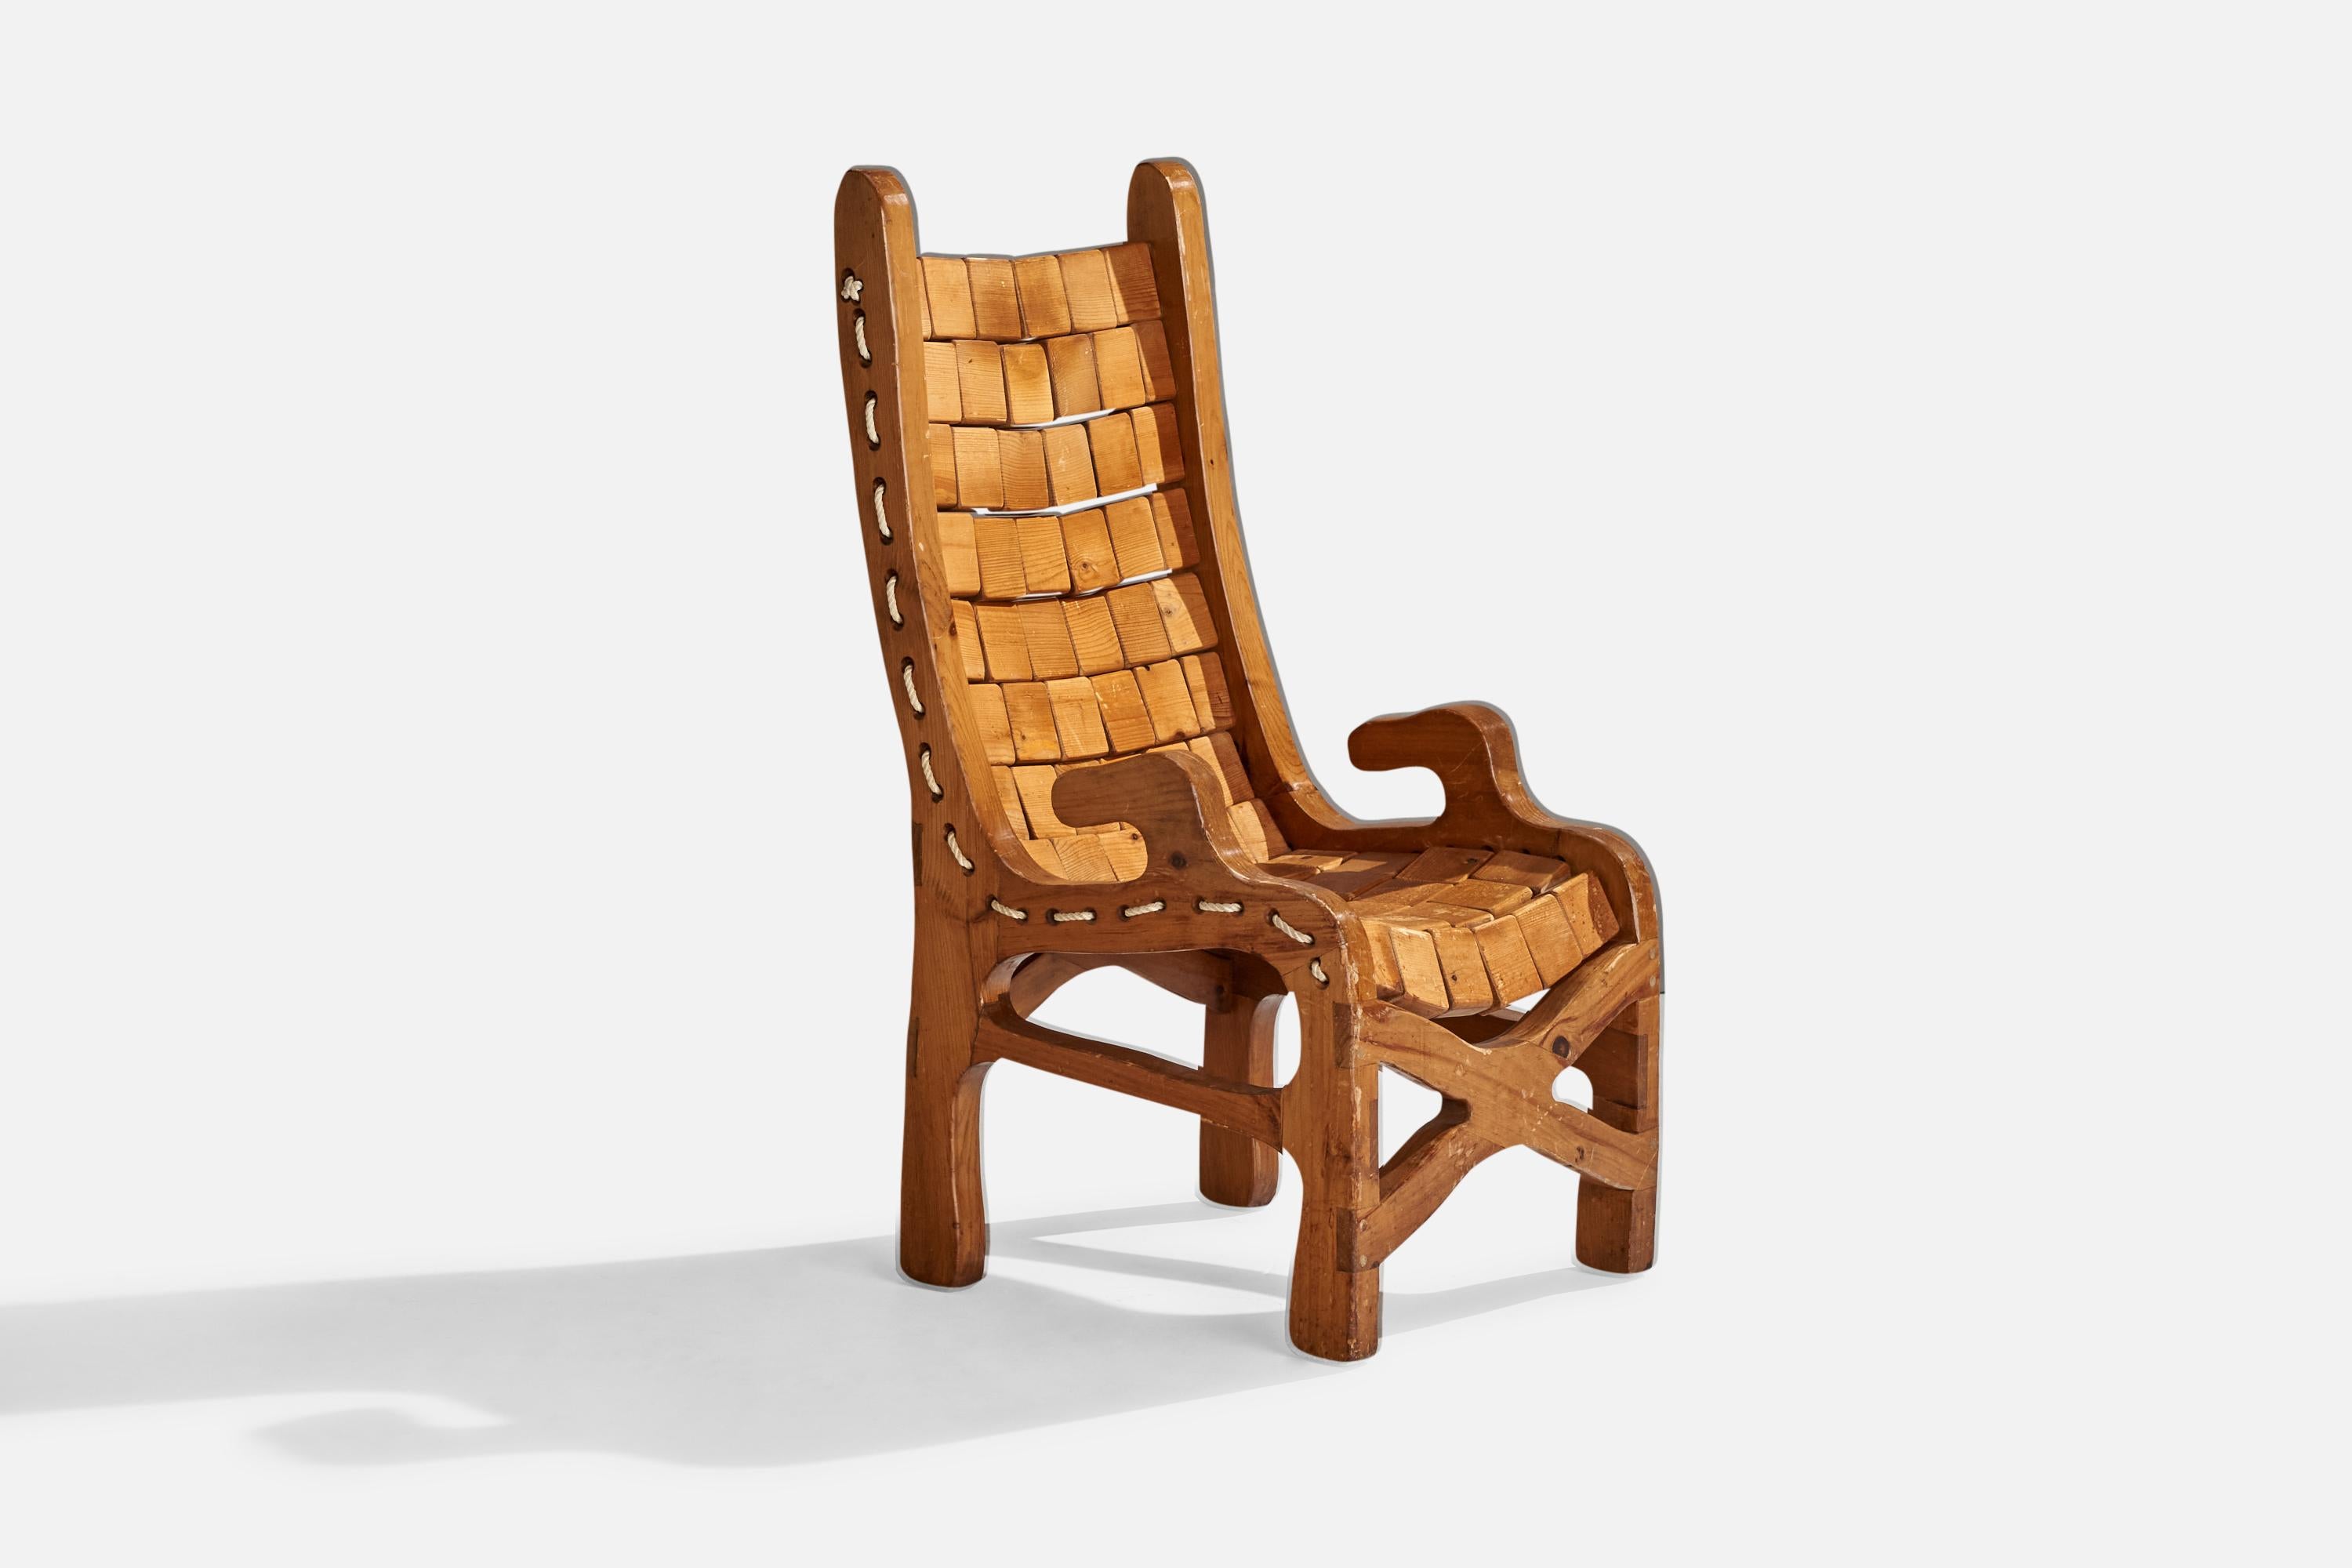 Sessel aus Kiefer und Kordel, entworfen und hergestellt in den USA, ca. 1970er Jahre.

Sitzhöhe: 17,25